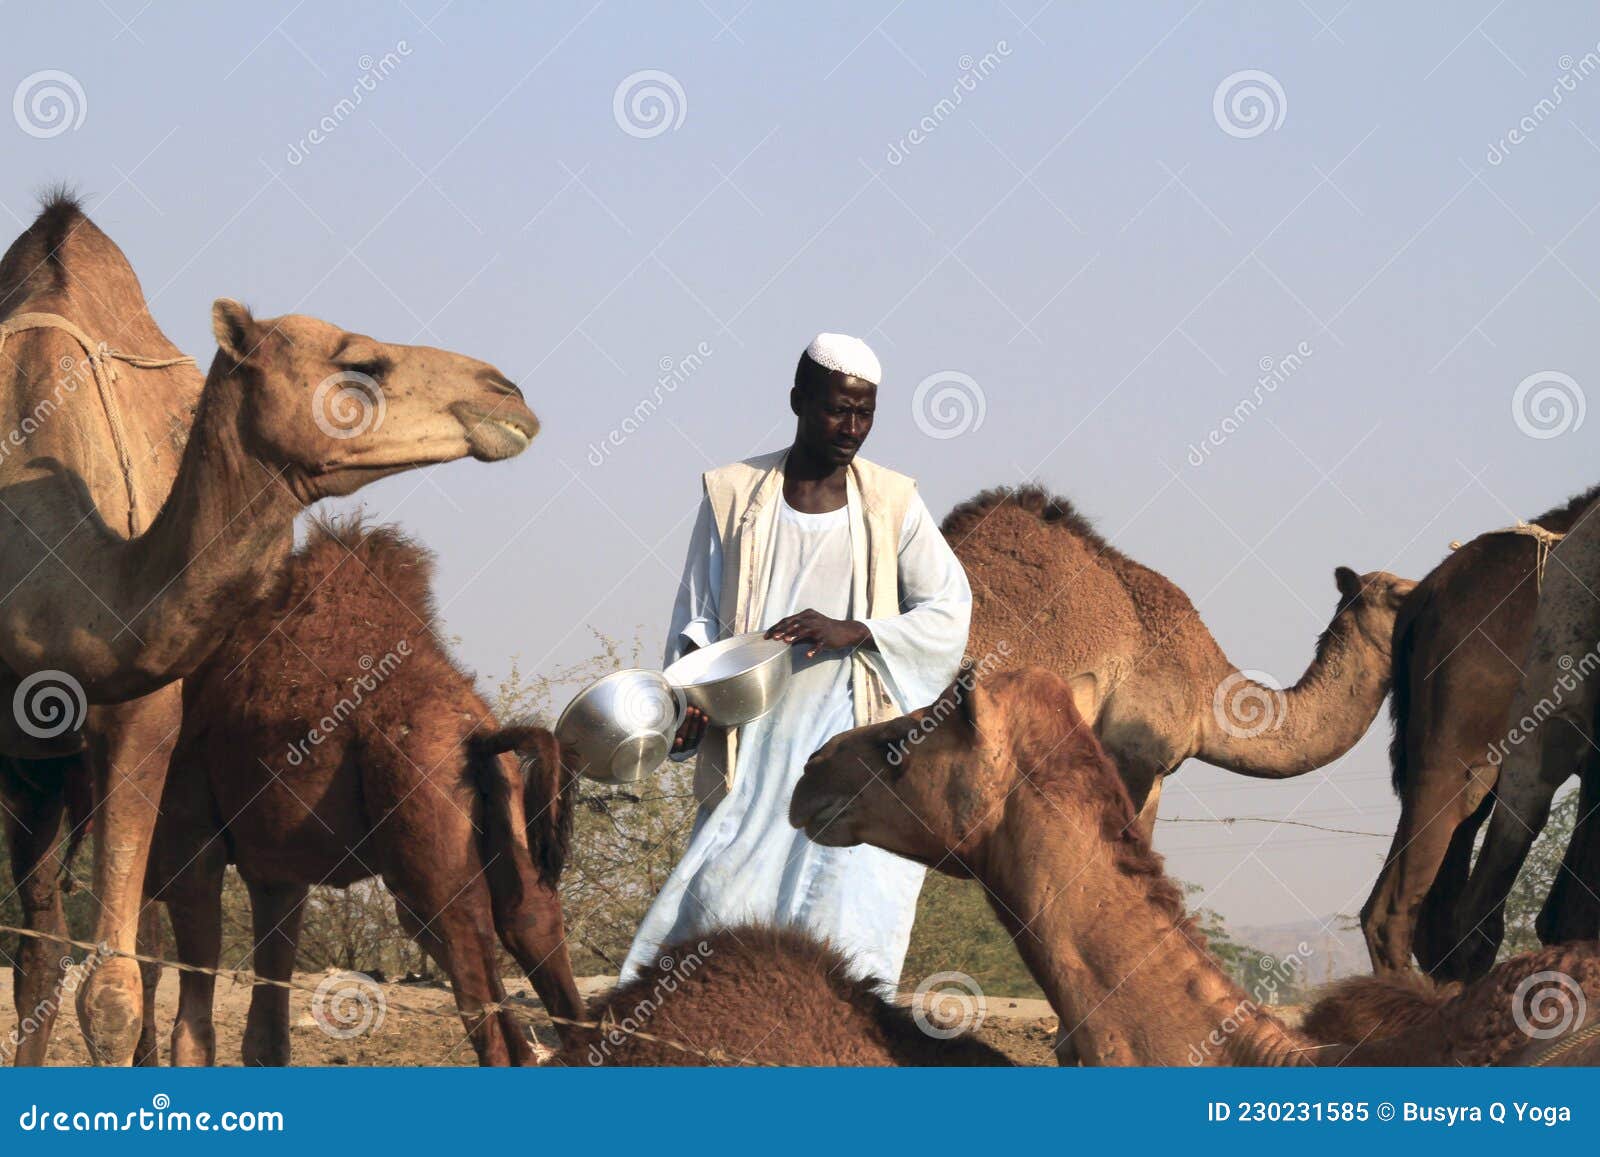 Kamelmilch-Verkäufer Mit Kamelen 1 Redaktionelles Bild - Bild von